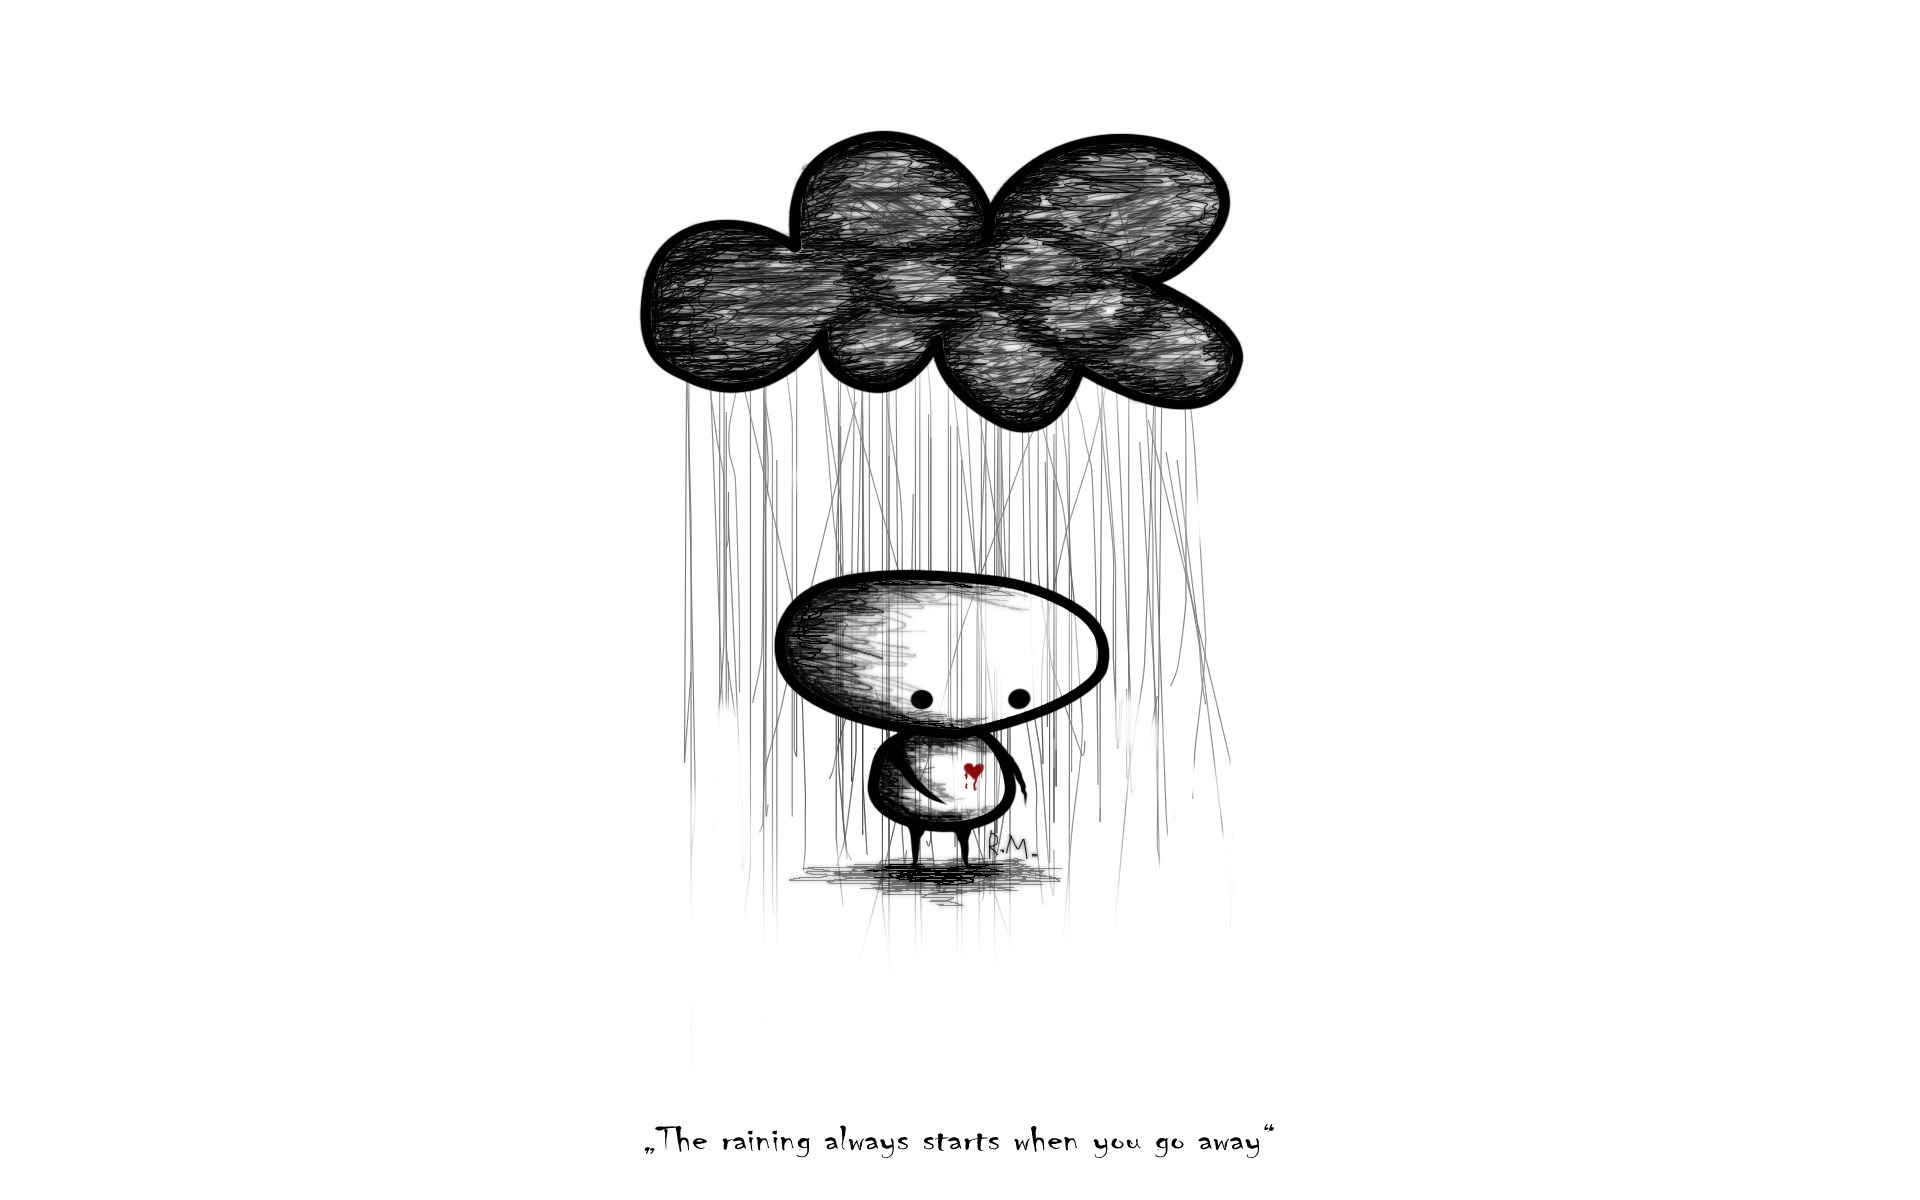 3d обои Над человечком туча, из которой льется дождь (The raining always starts when you go away)  черно-белые # 88490